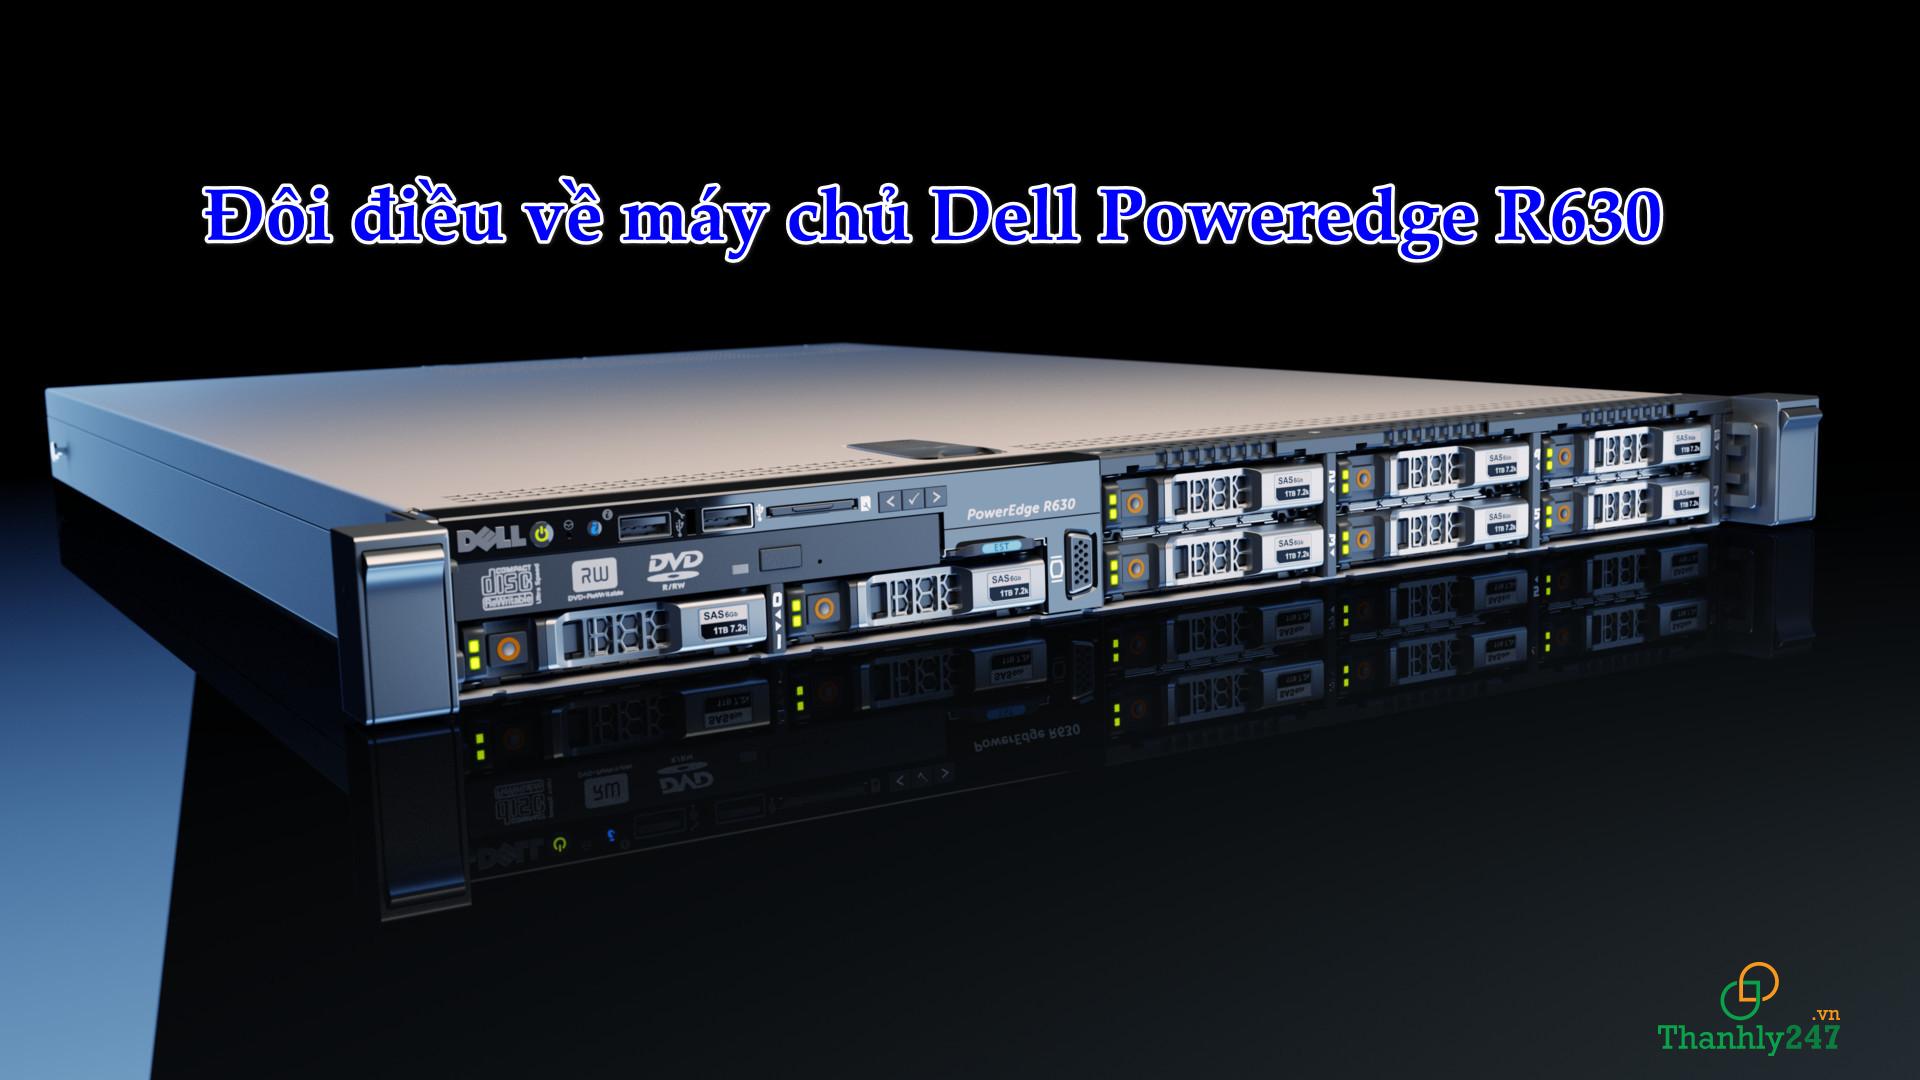 Đôi điều về máy chủ Dell Poweredge R630